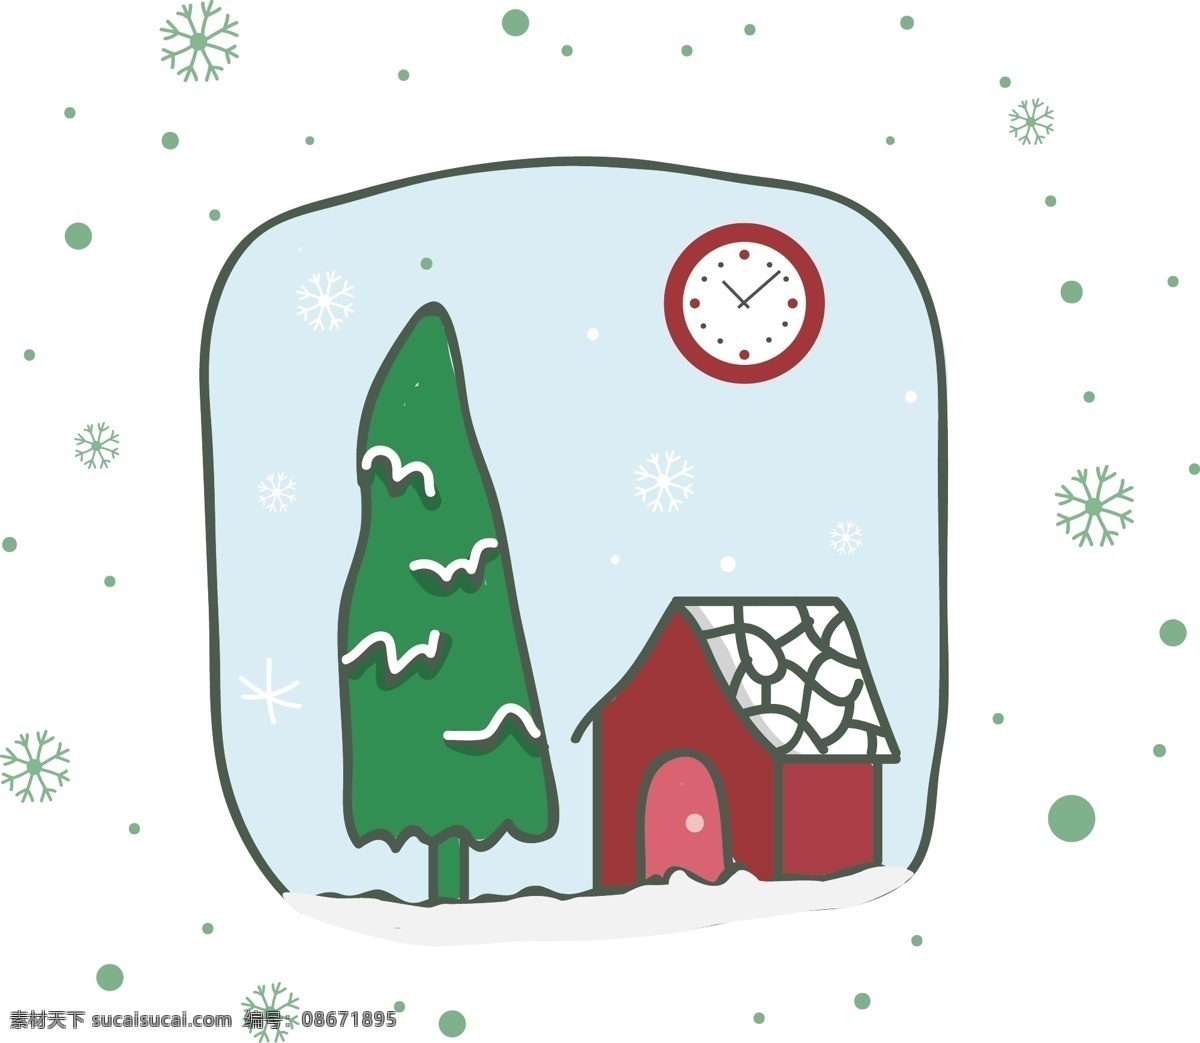 简约 创意 插画 圣诞 卡通 元素 房子 雪花 树